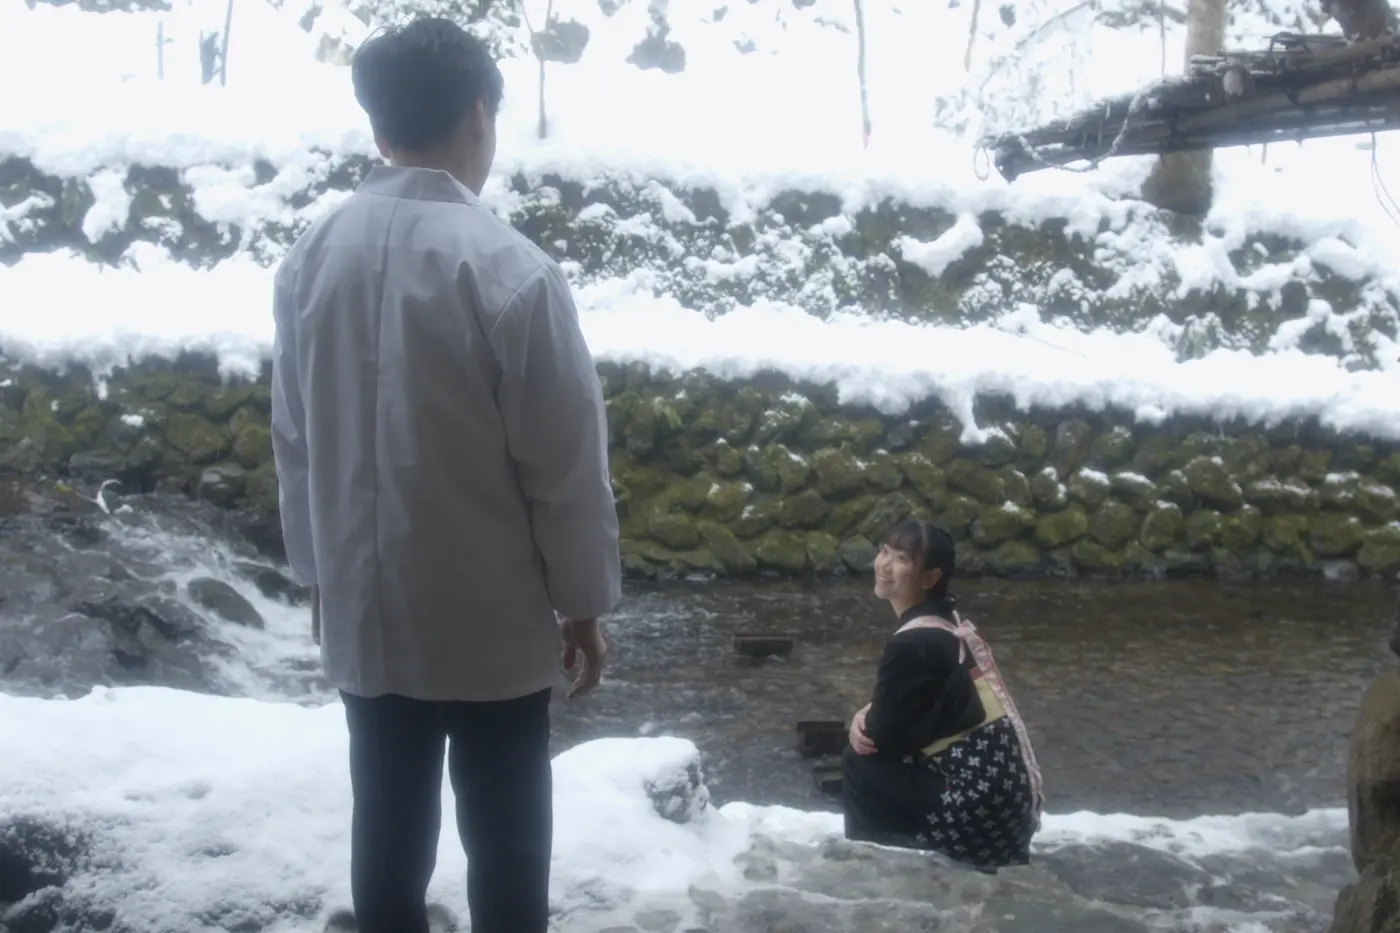 eine Frau in Hoteluniform sitzt am Ufer eines schmalen Flusses, sie dreht sich zu einem Mann, der mit dem Rücken zur Kamera steht und mit ihre redet, es schneit